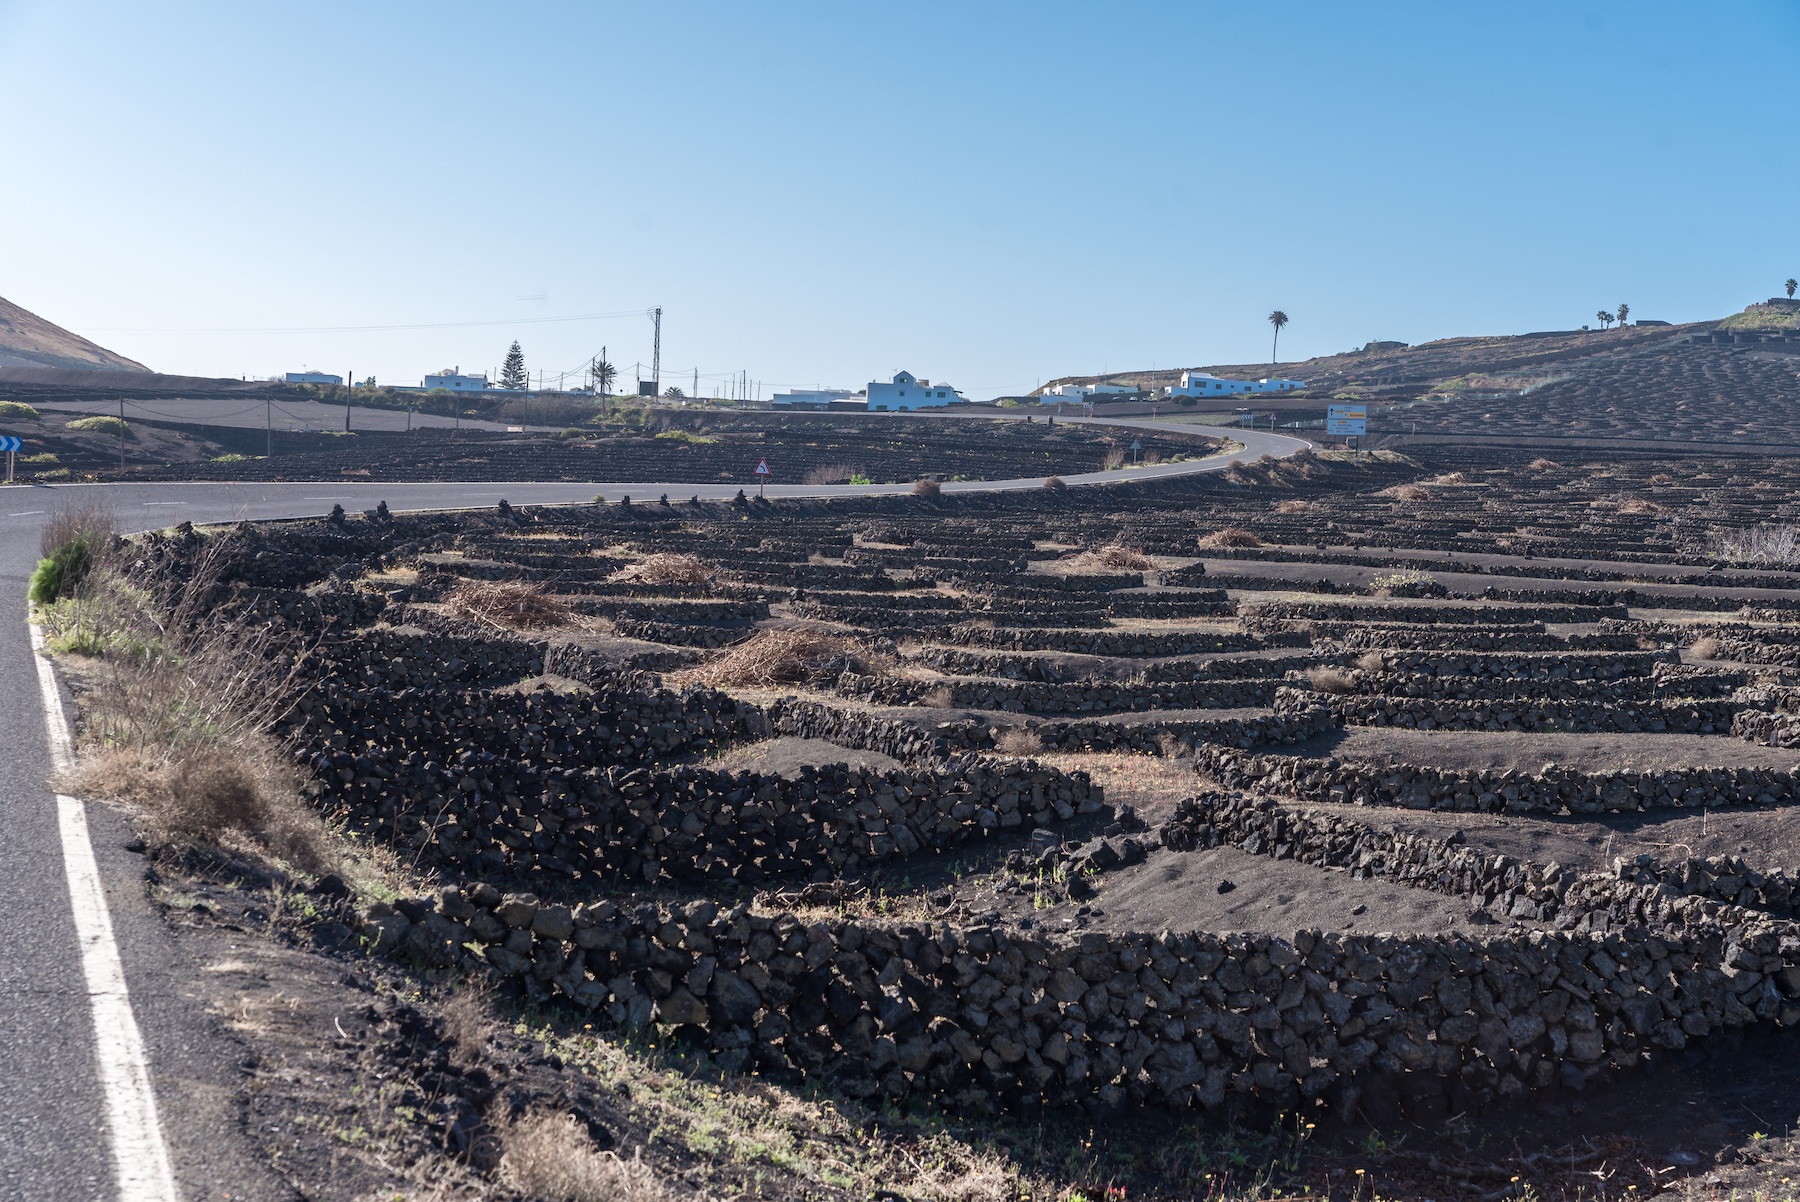 Так местные пытаются решить проблему отсутствия земли и воды — выращивают виноград прямо в вулканическом пепле, собирая росу